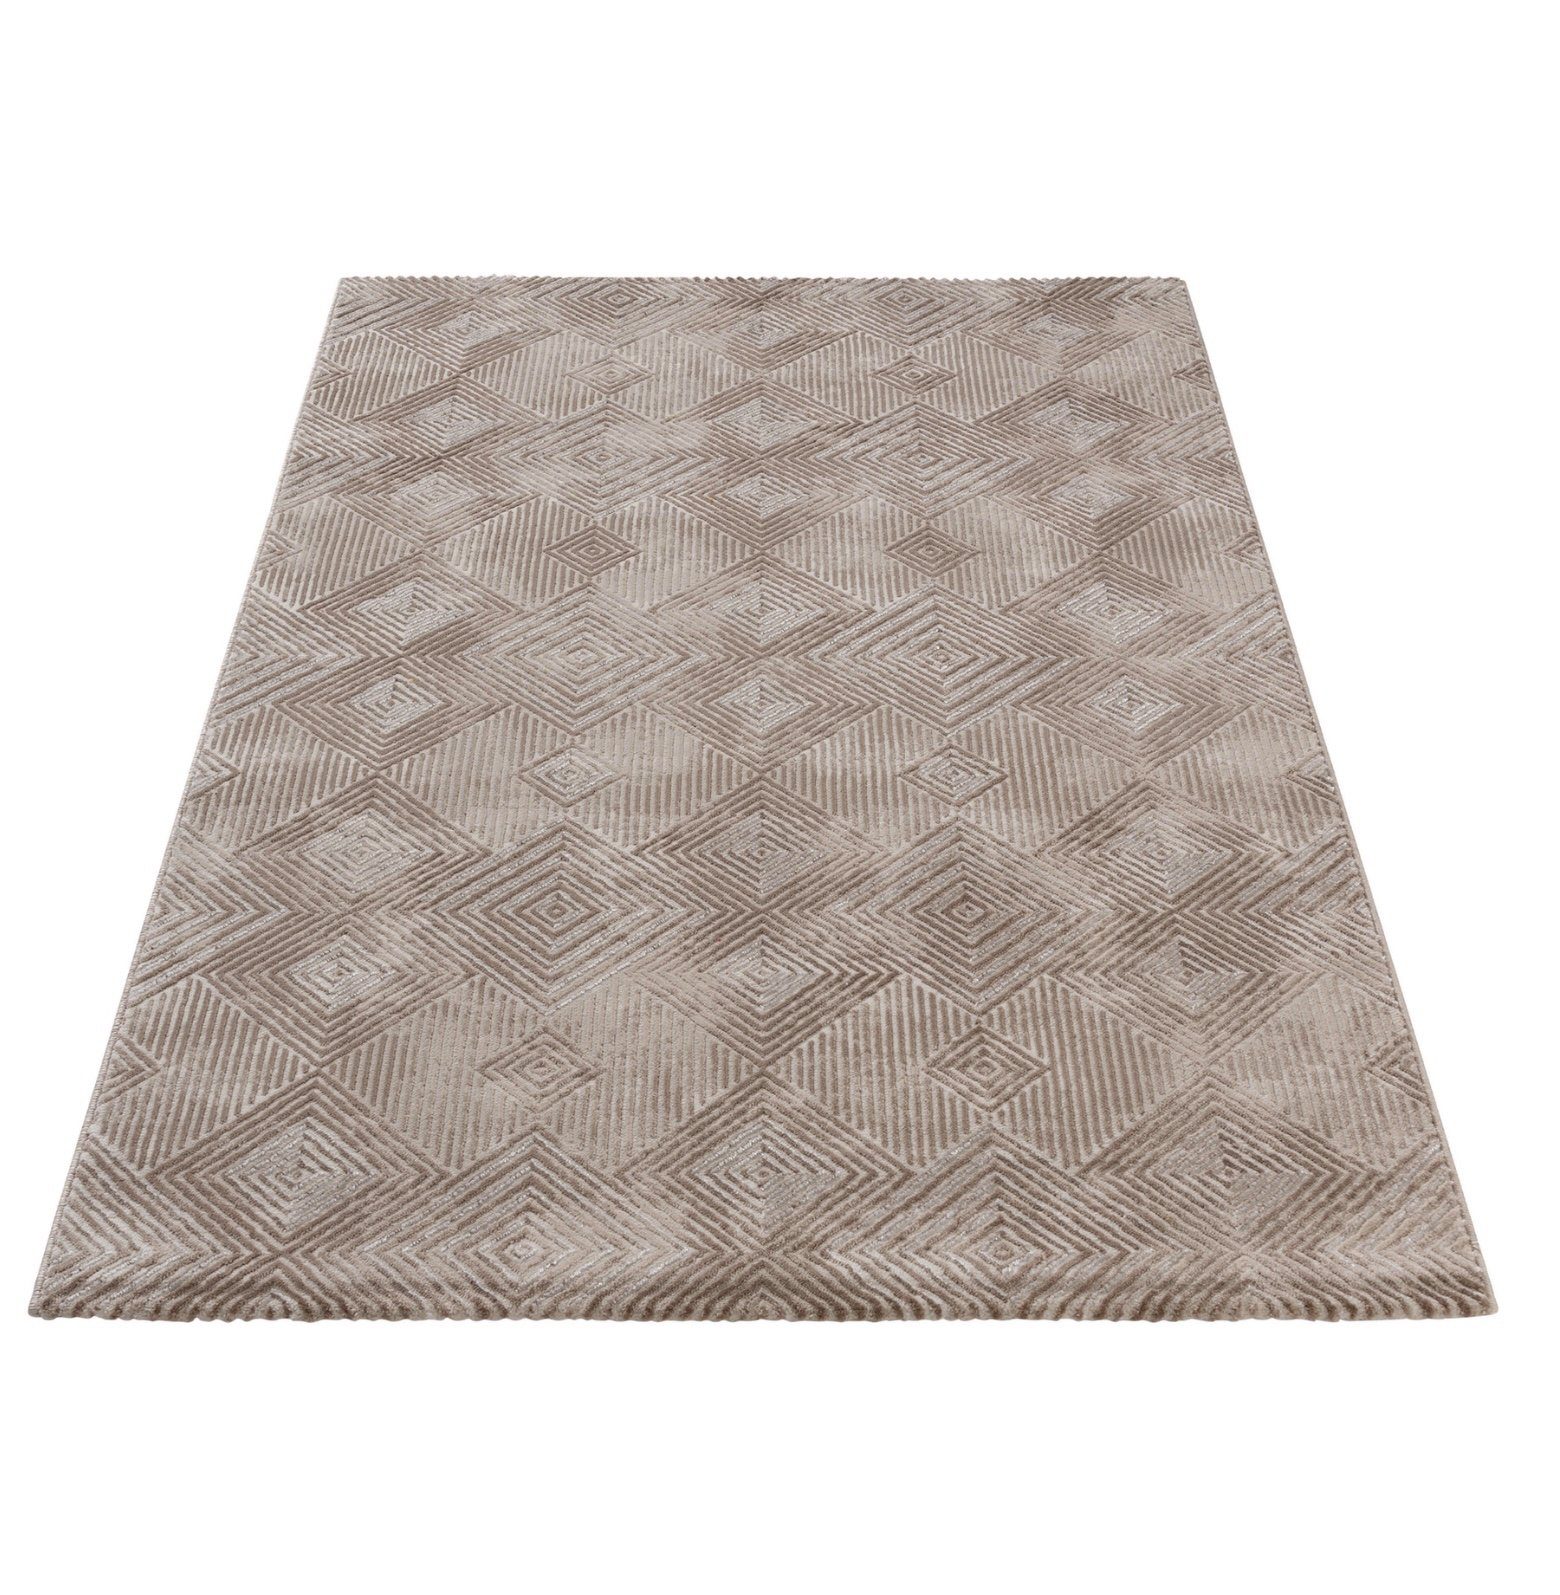 Designteppich Teppich Florhöhe 12mm mit modernen Design, Giantore beige